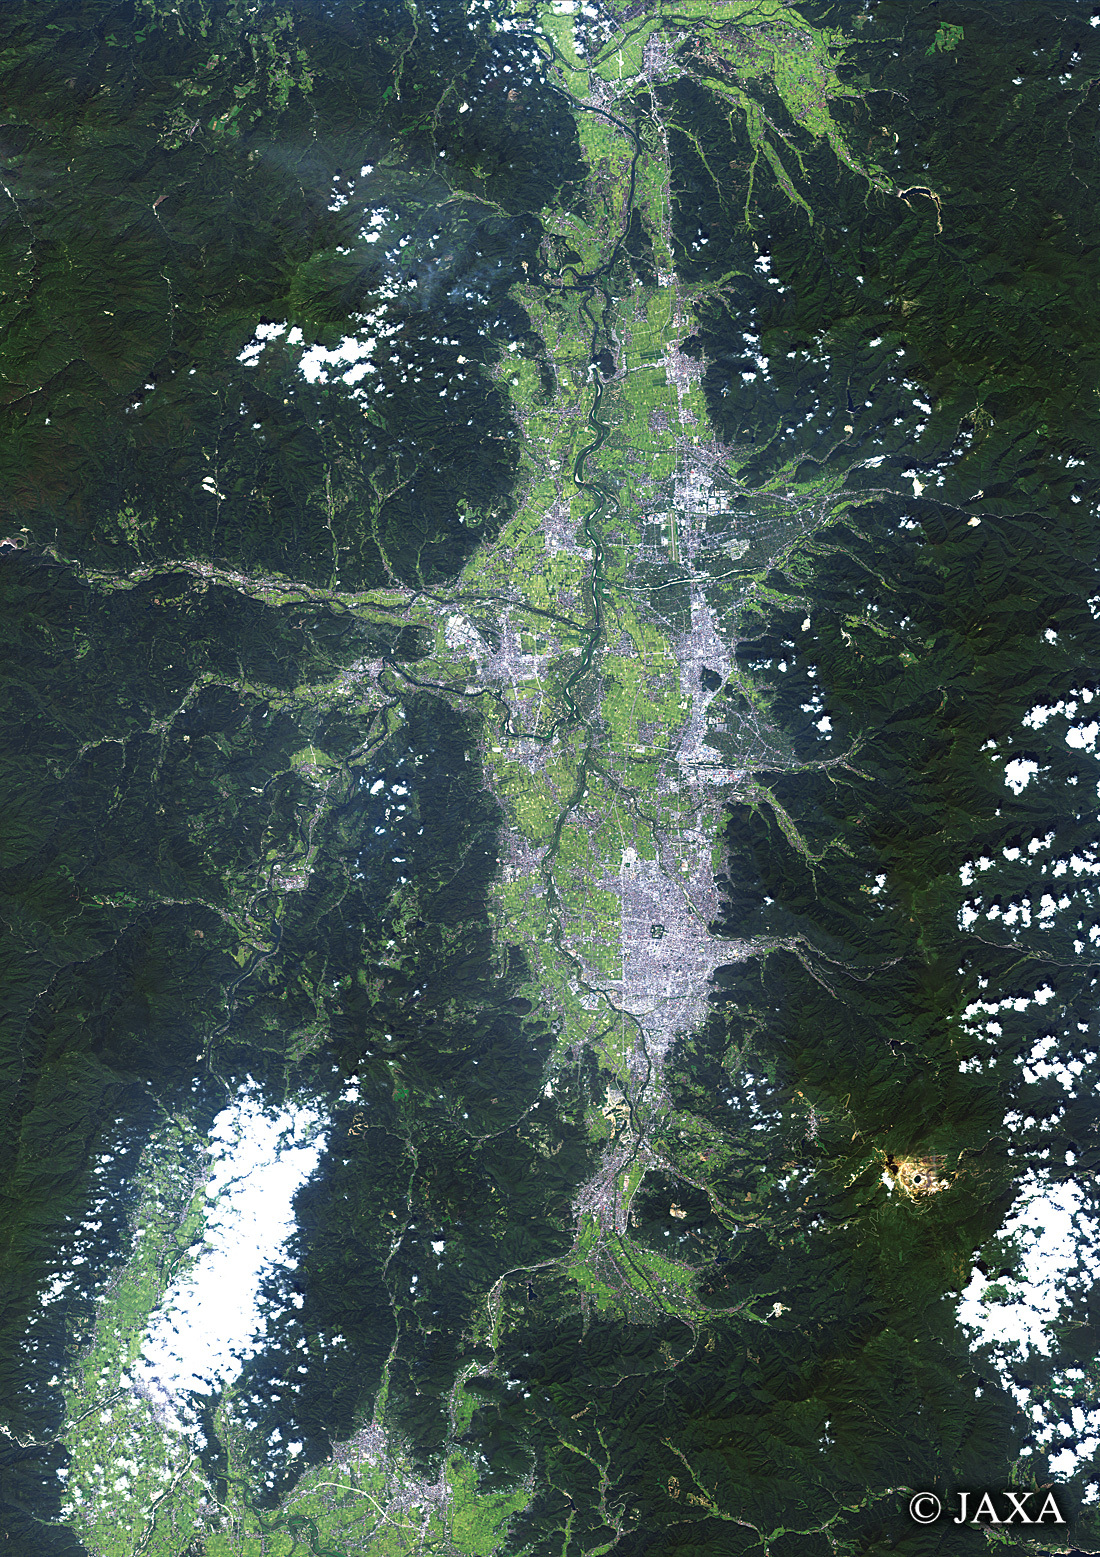 だいちから見た日本の都市 山形盆地:衛星画像